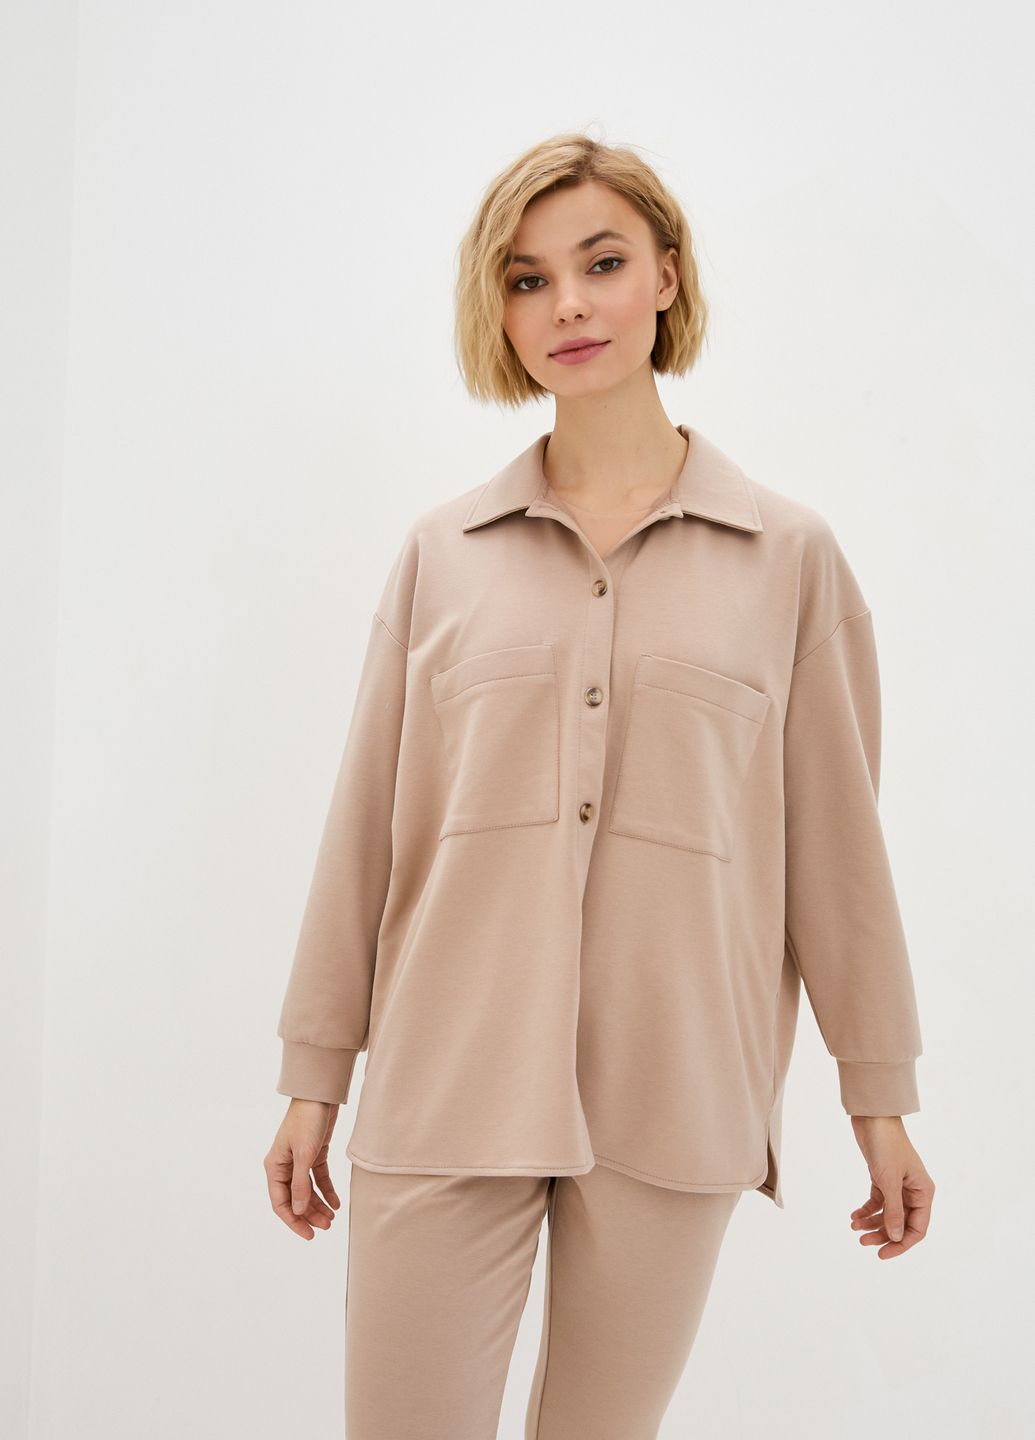 Купить Костюм женский с рубашкой бежевого цвета Merlini Сандерленд 100000087, размер 42-44 в интернет-магазине